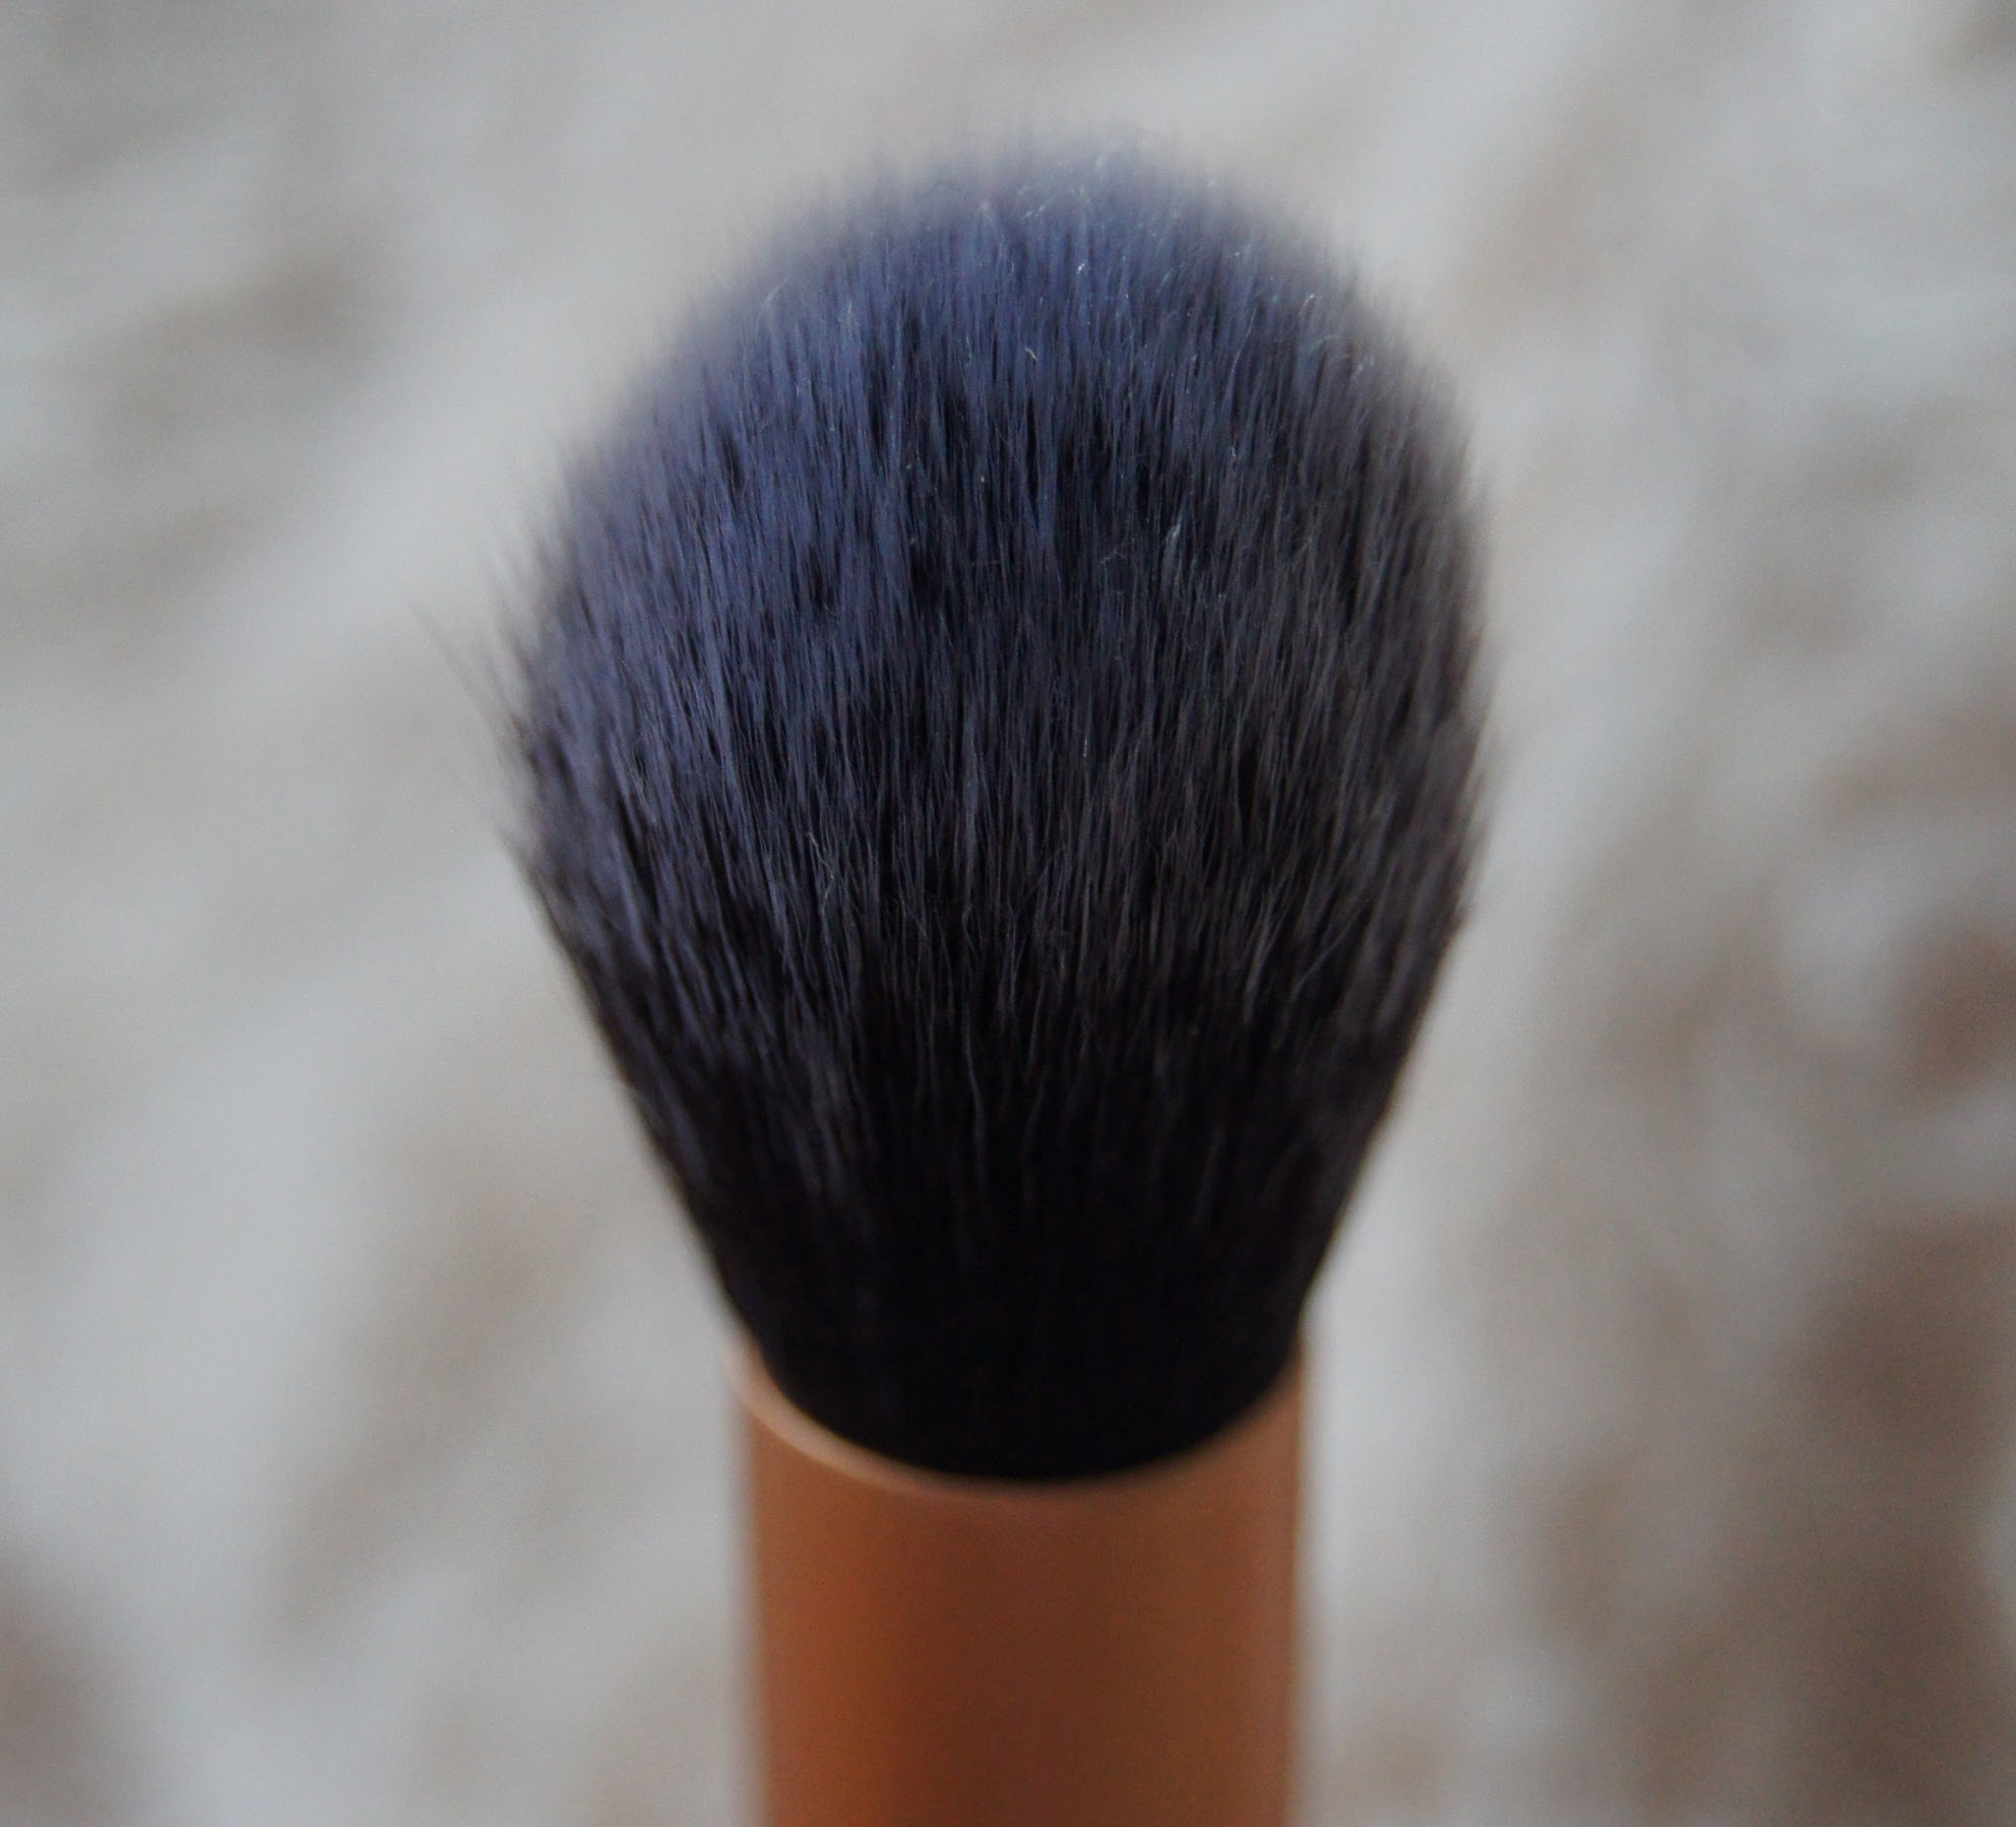 Is It A Dupe?: Ultimate Blending Brush vs Expert Face Brush 